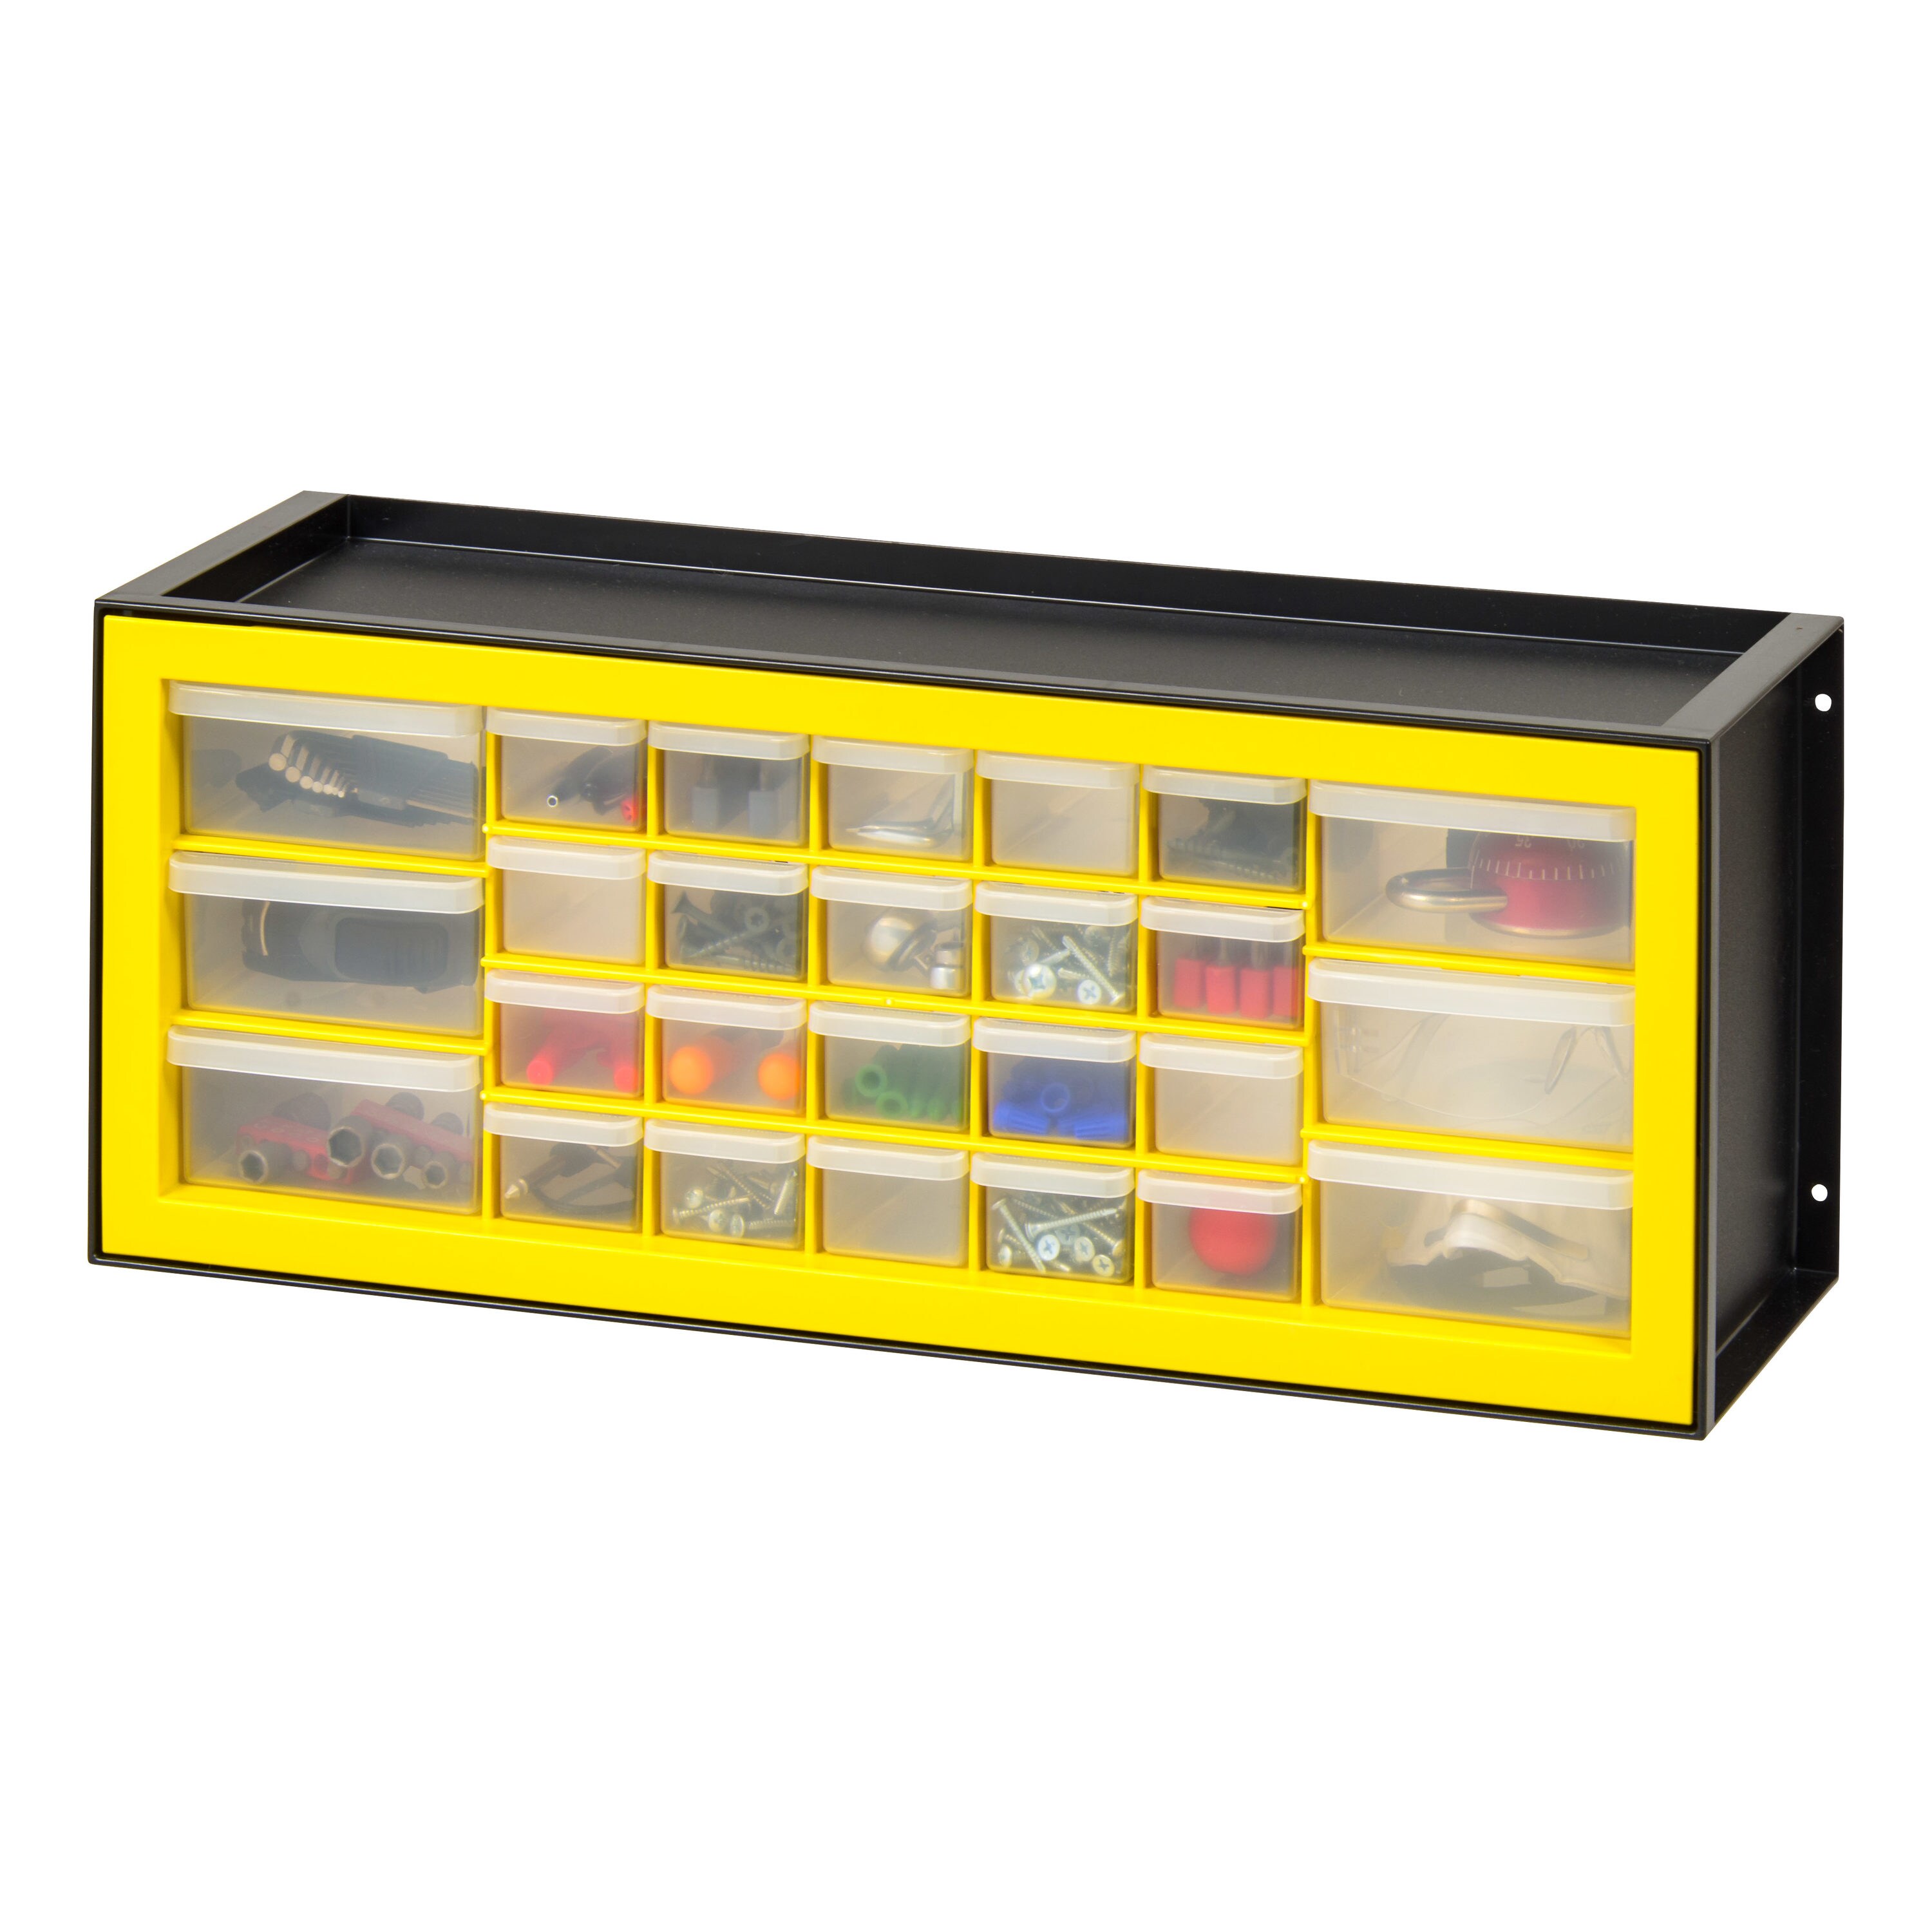 Stalwart Storage Drawers-64 Compartment Organizer Desktop or Wall Mountab